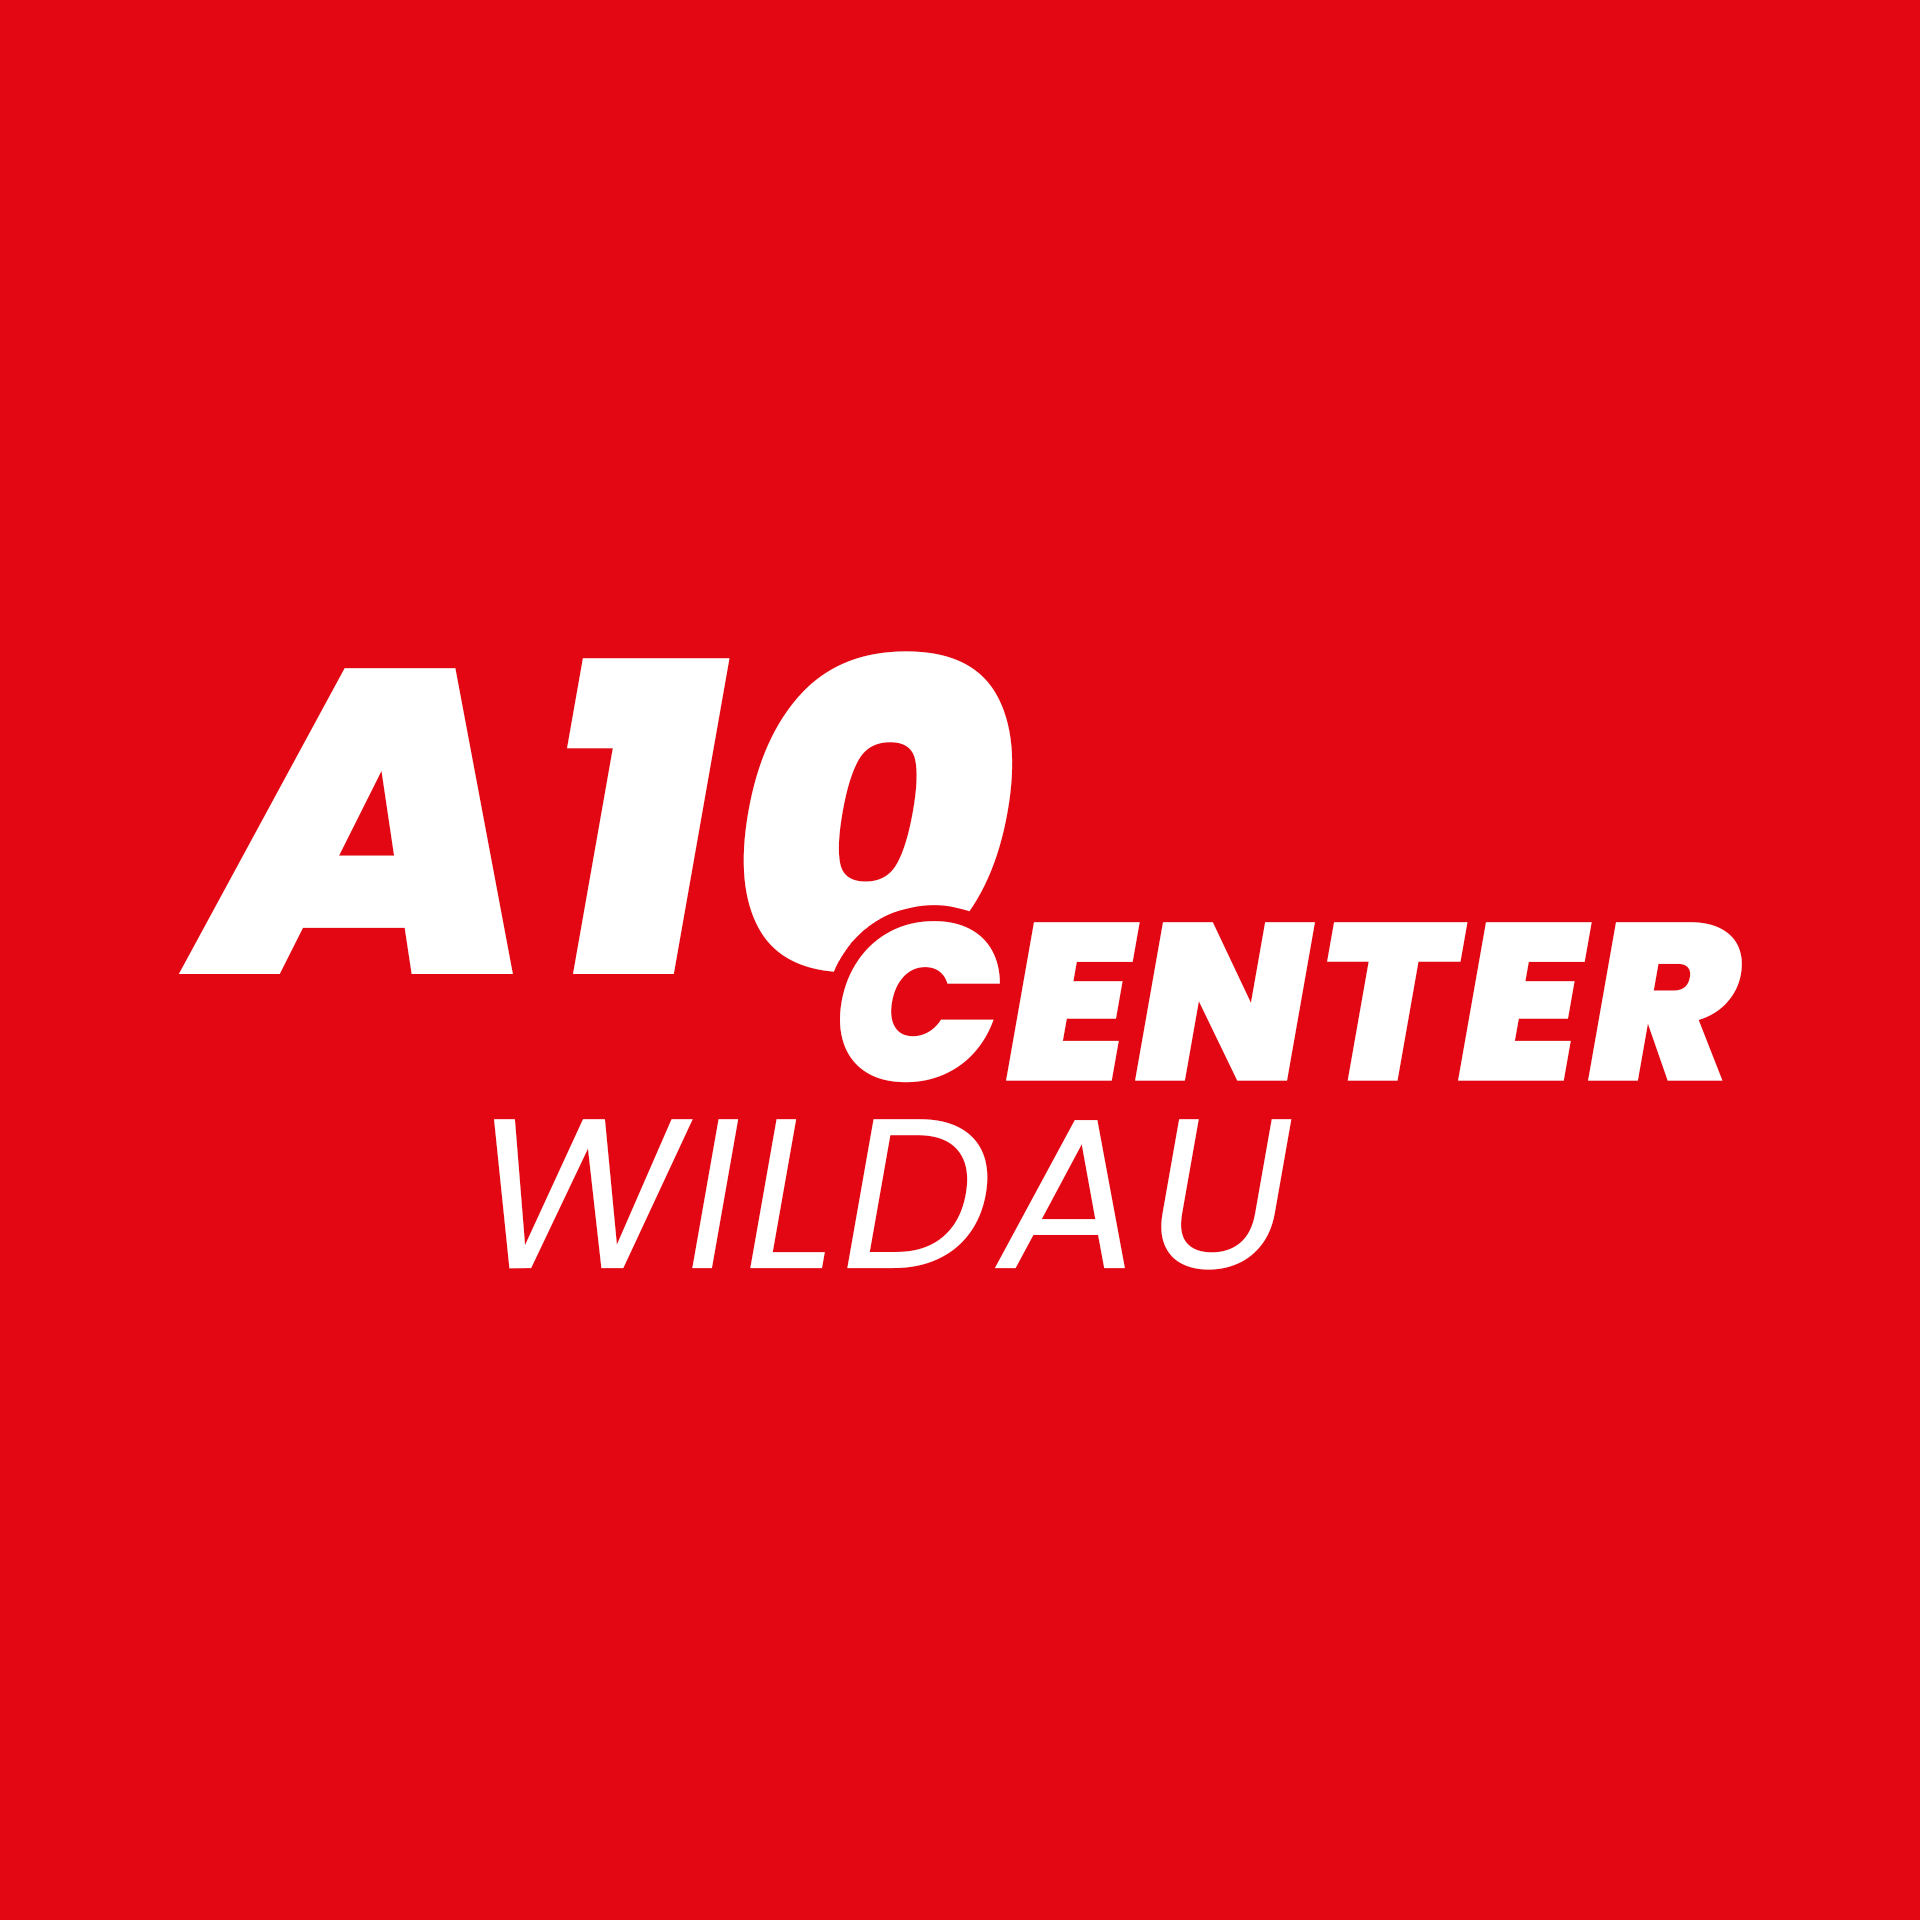 A10 Center Wildau